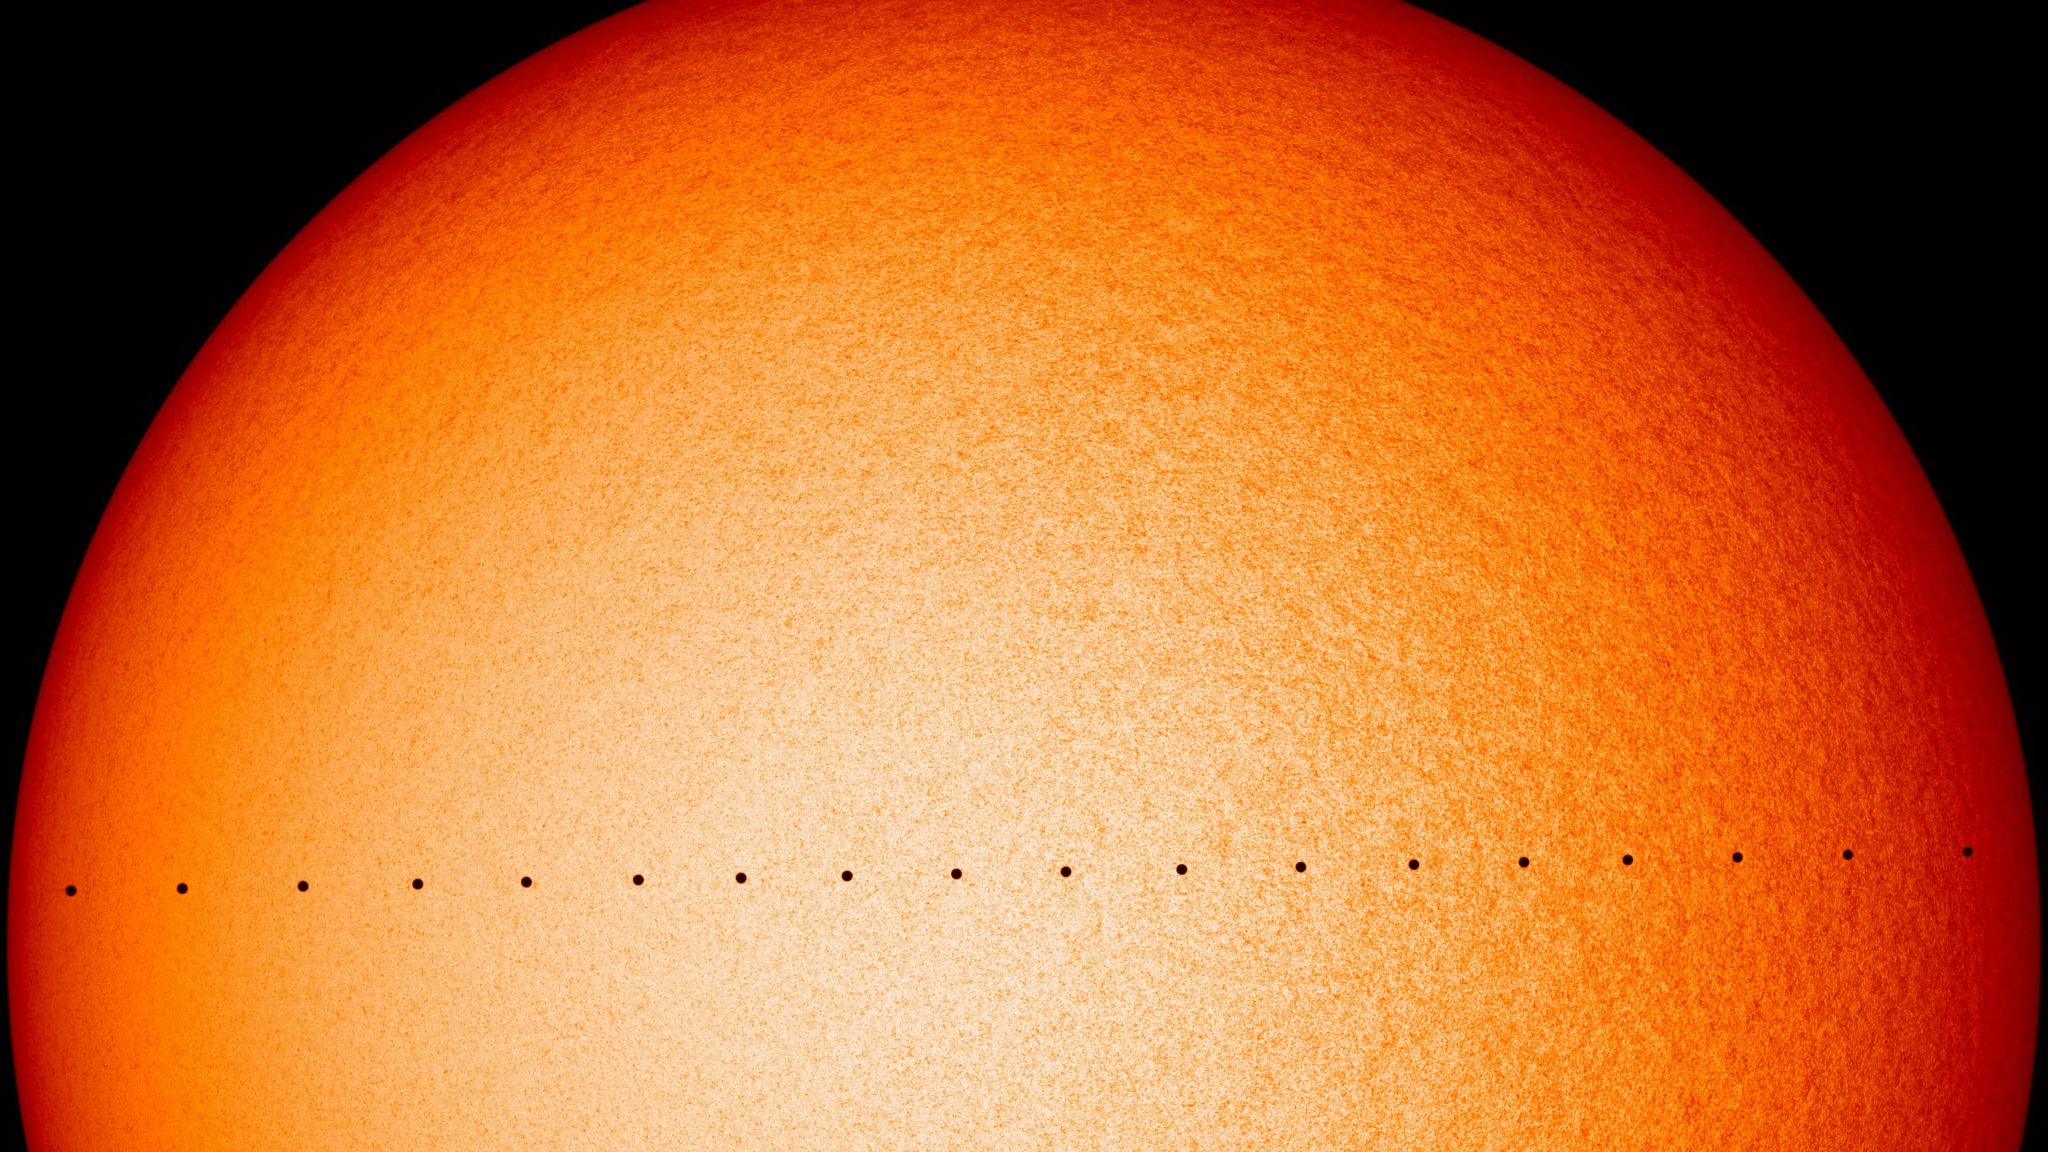 2019 Transit of Mercury Across the Sun in Stunning 4K [Video]